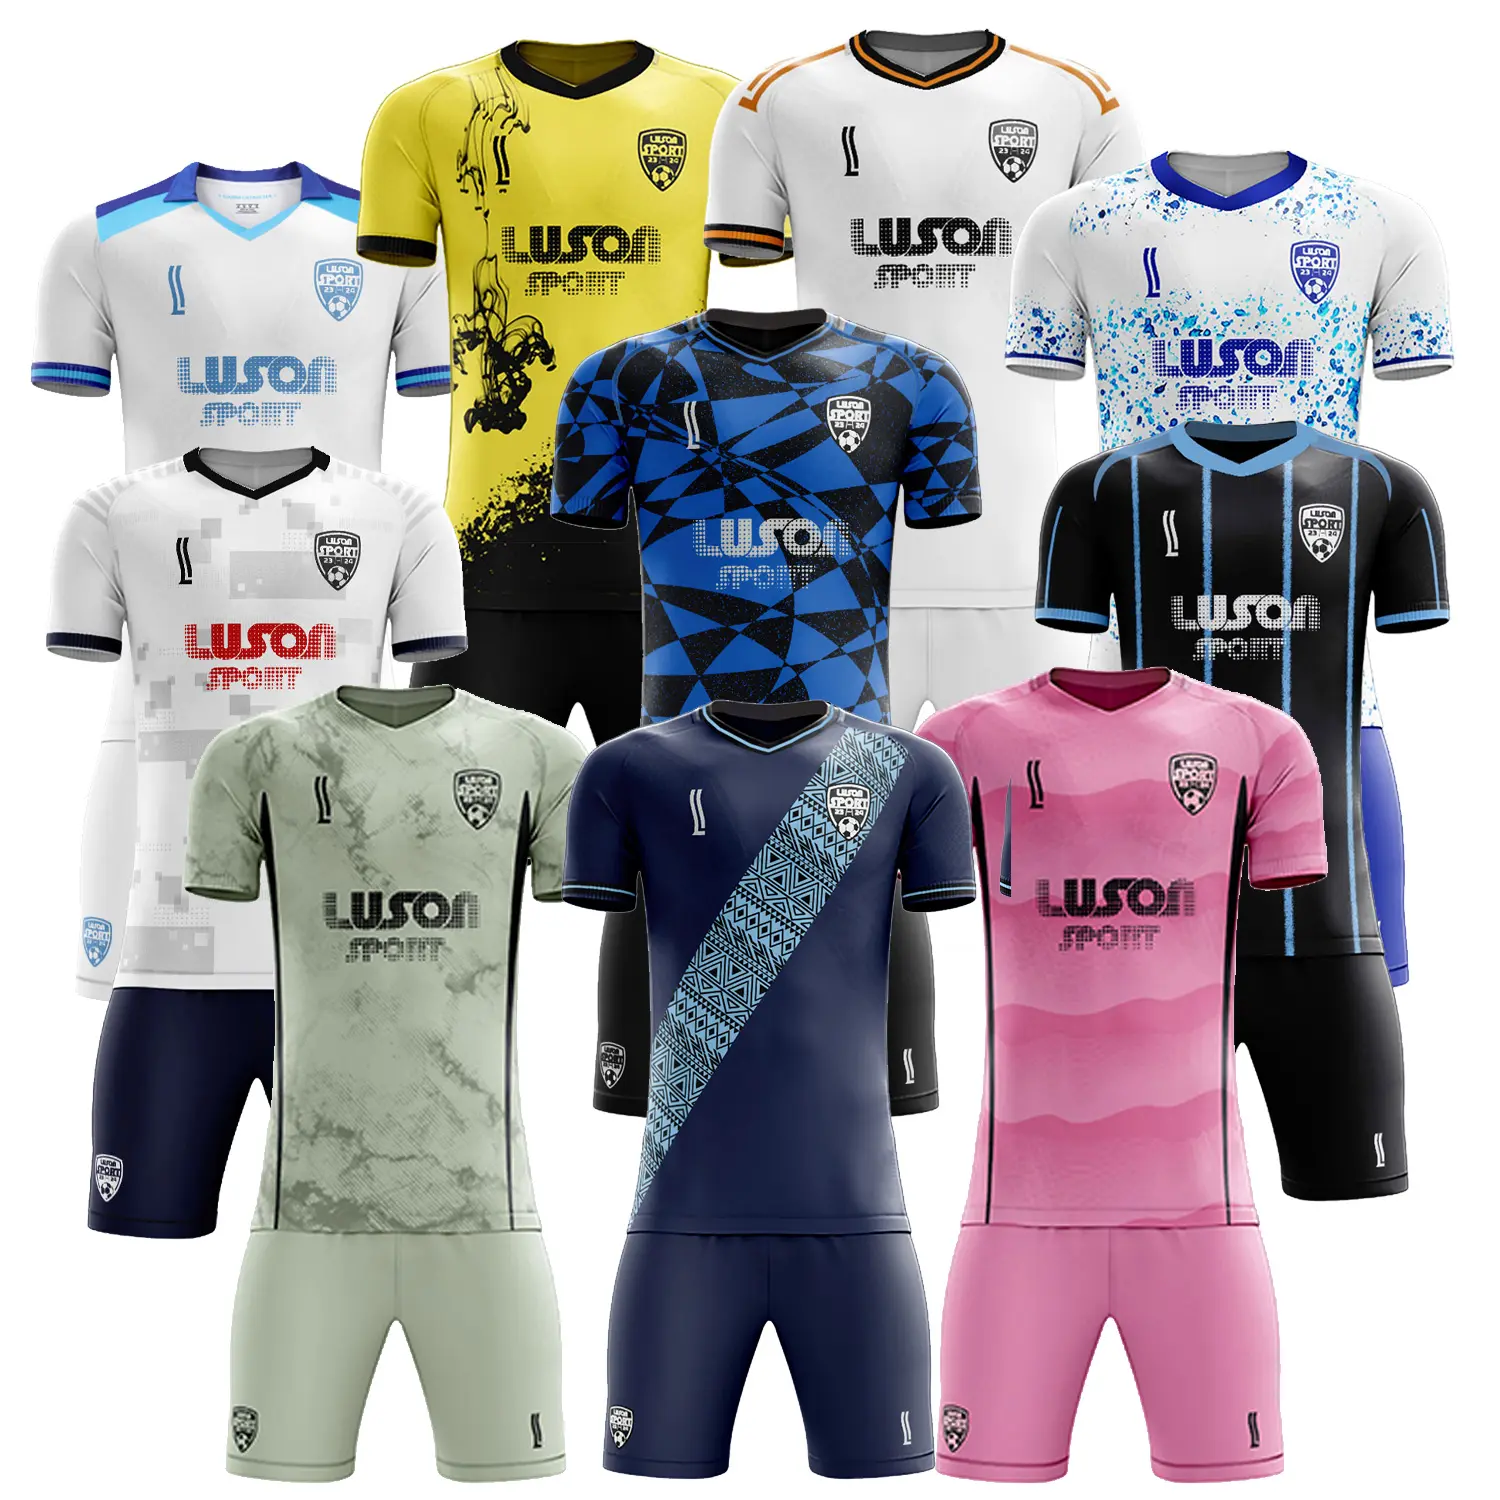 Camisa de futebol LUSON personalizada para equipe de futebol, camisa de futebol de qualidade da Tailândia, uniforme para homens, roupa de futebol